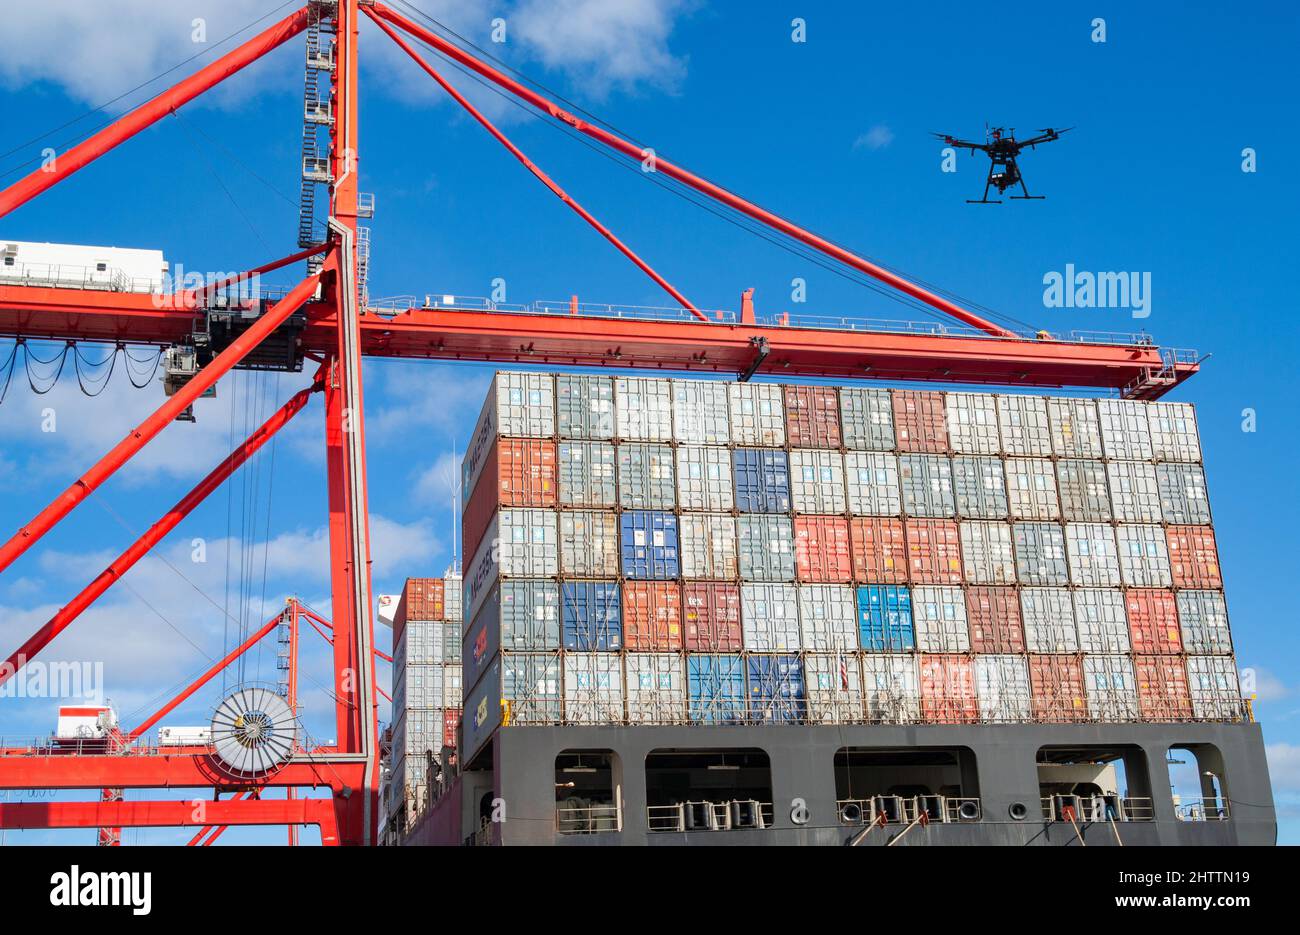 Drone che vola sopra i container di spedizione sulla nave in porto. Concetto: Tecnologia dei droni, Mar Rosso, attacco, dirottamento sorveglianza, sicurezza, attacco droni... Foto Stock